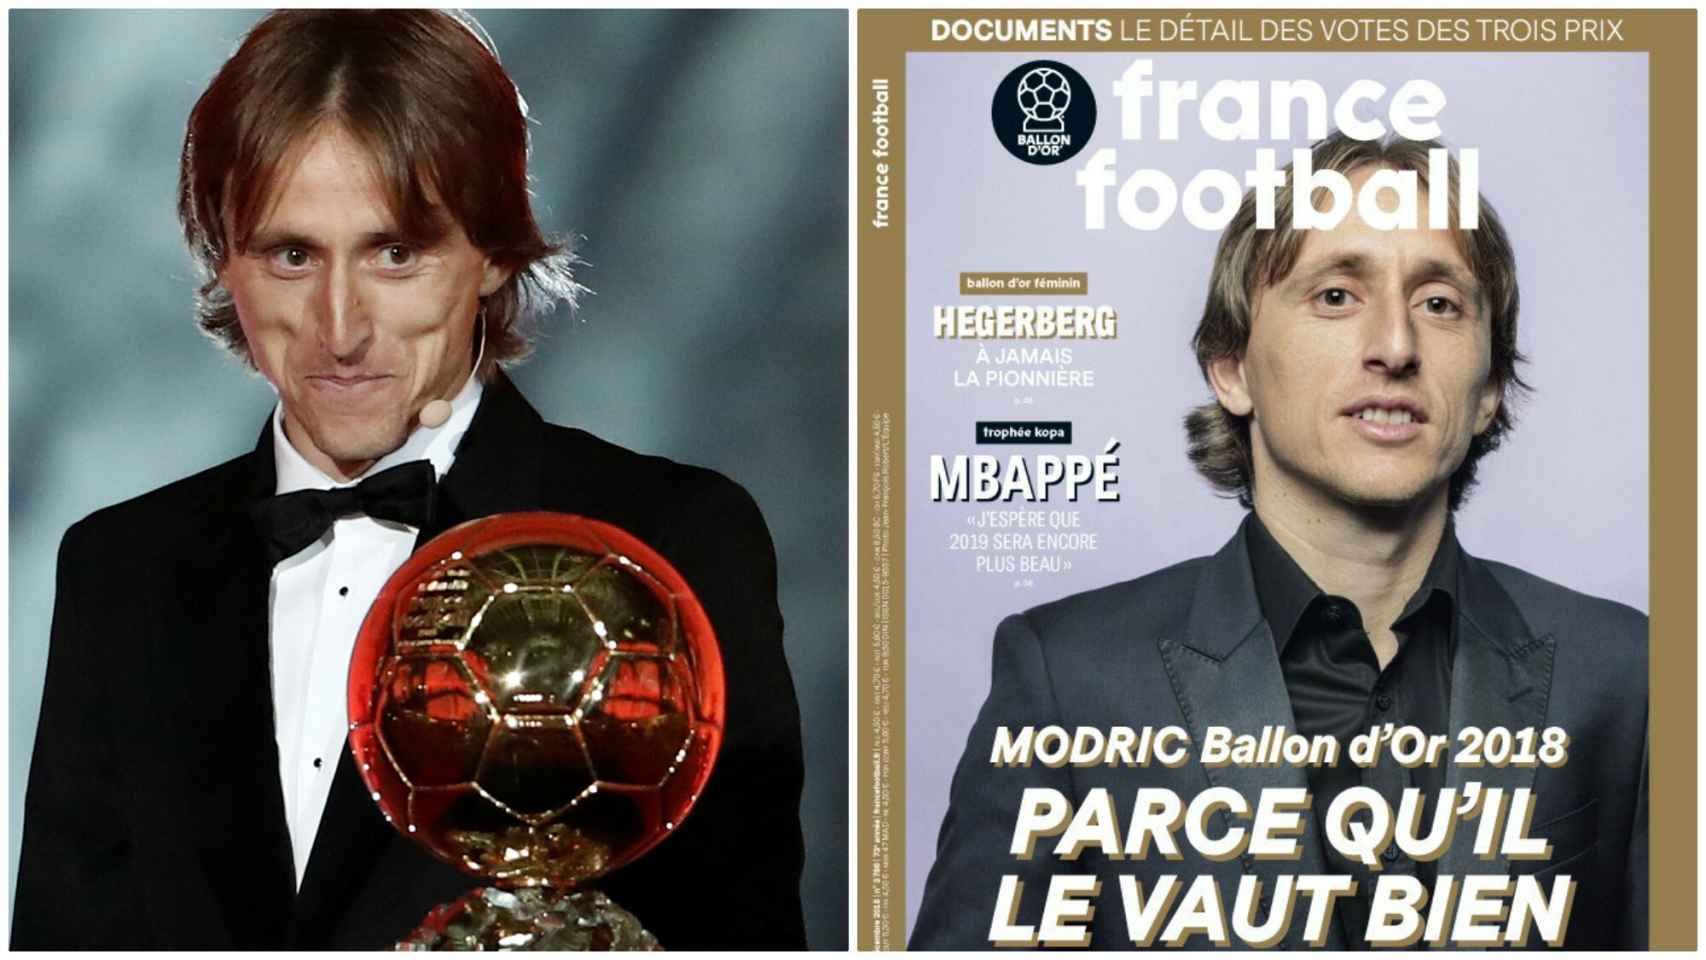 La portada de France Football (04/12/2018)